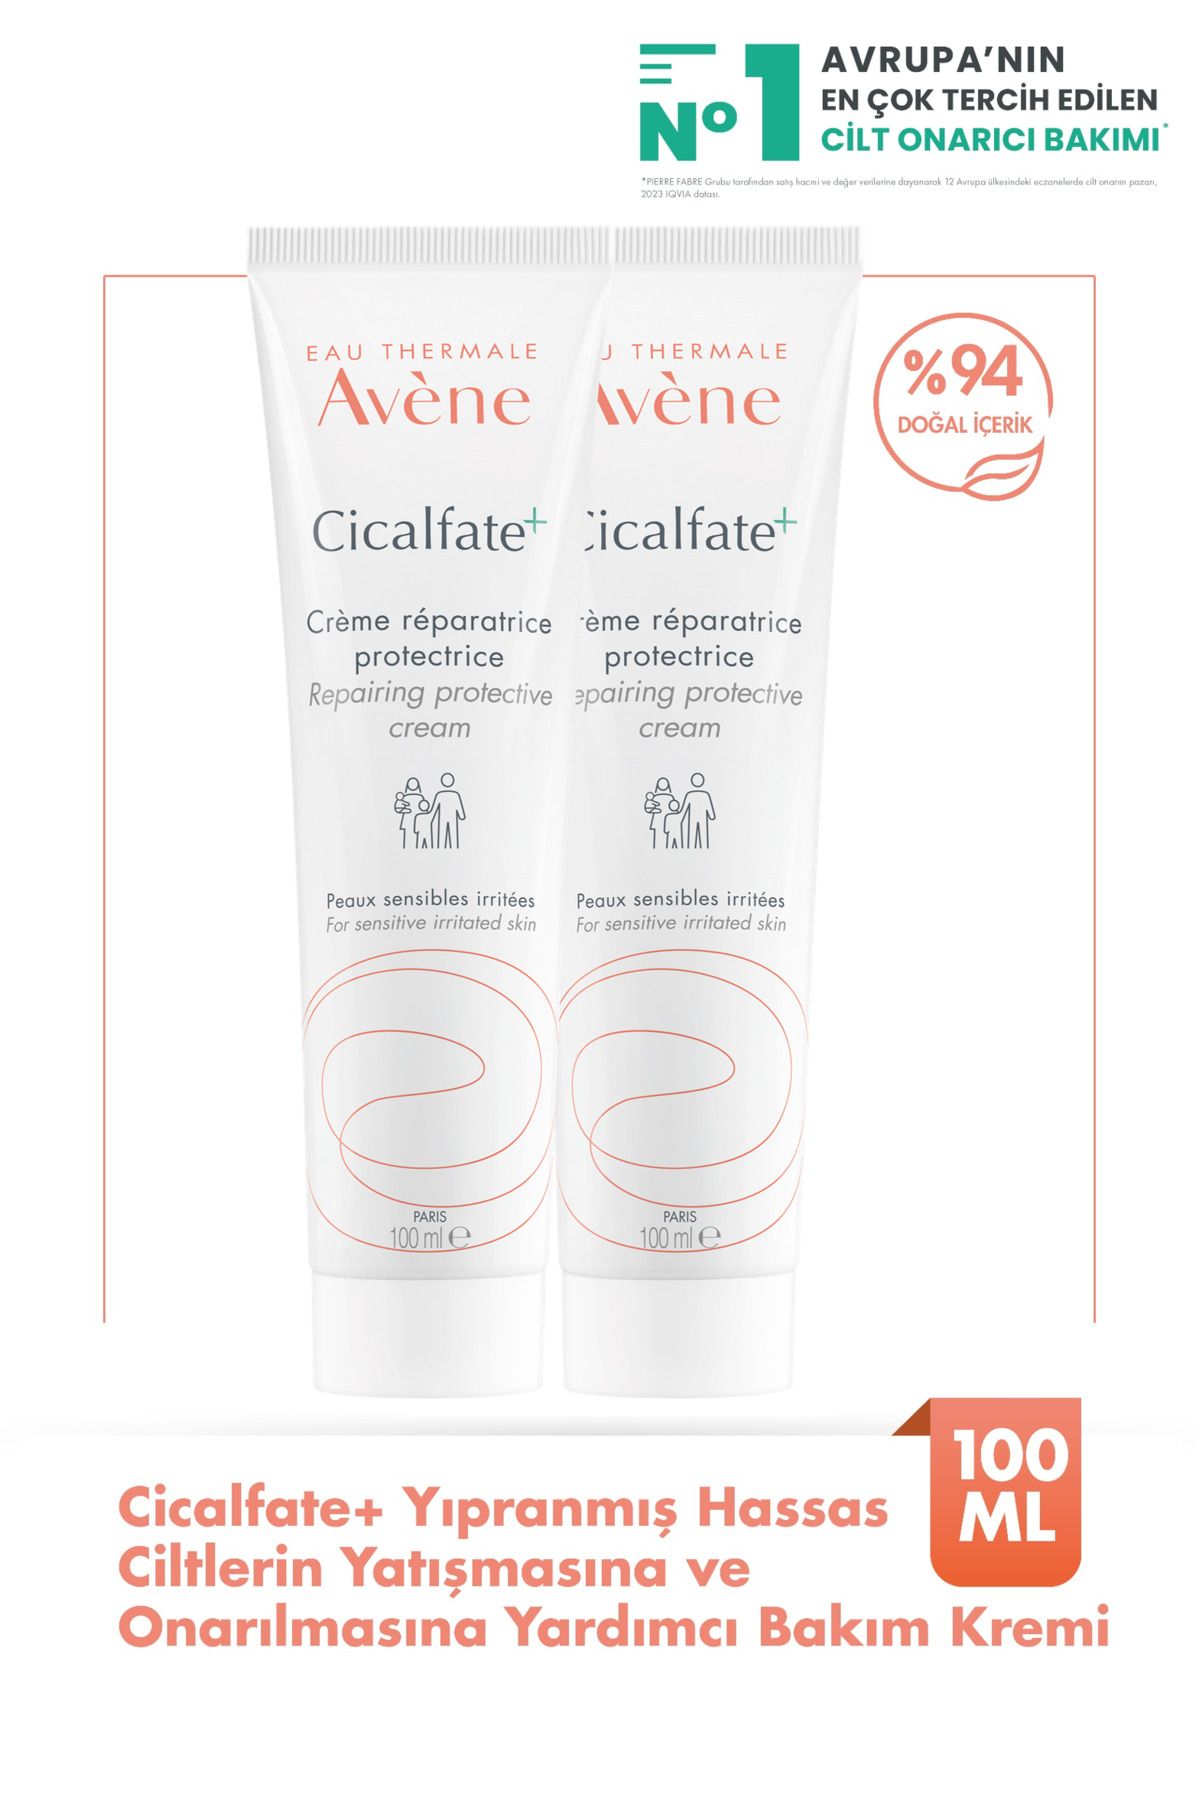 Avene Cicalfate+ Yıpranmış Hassas Ciltlerin Onarılmasına ve Yatışmasına Yardımcı Bakım Kremi 100 ml x2